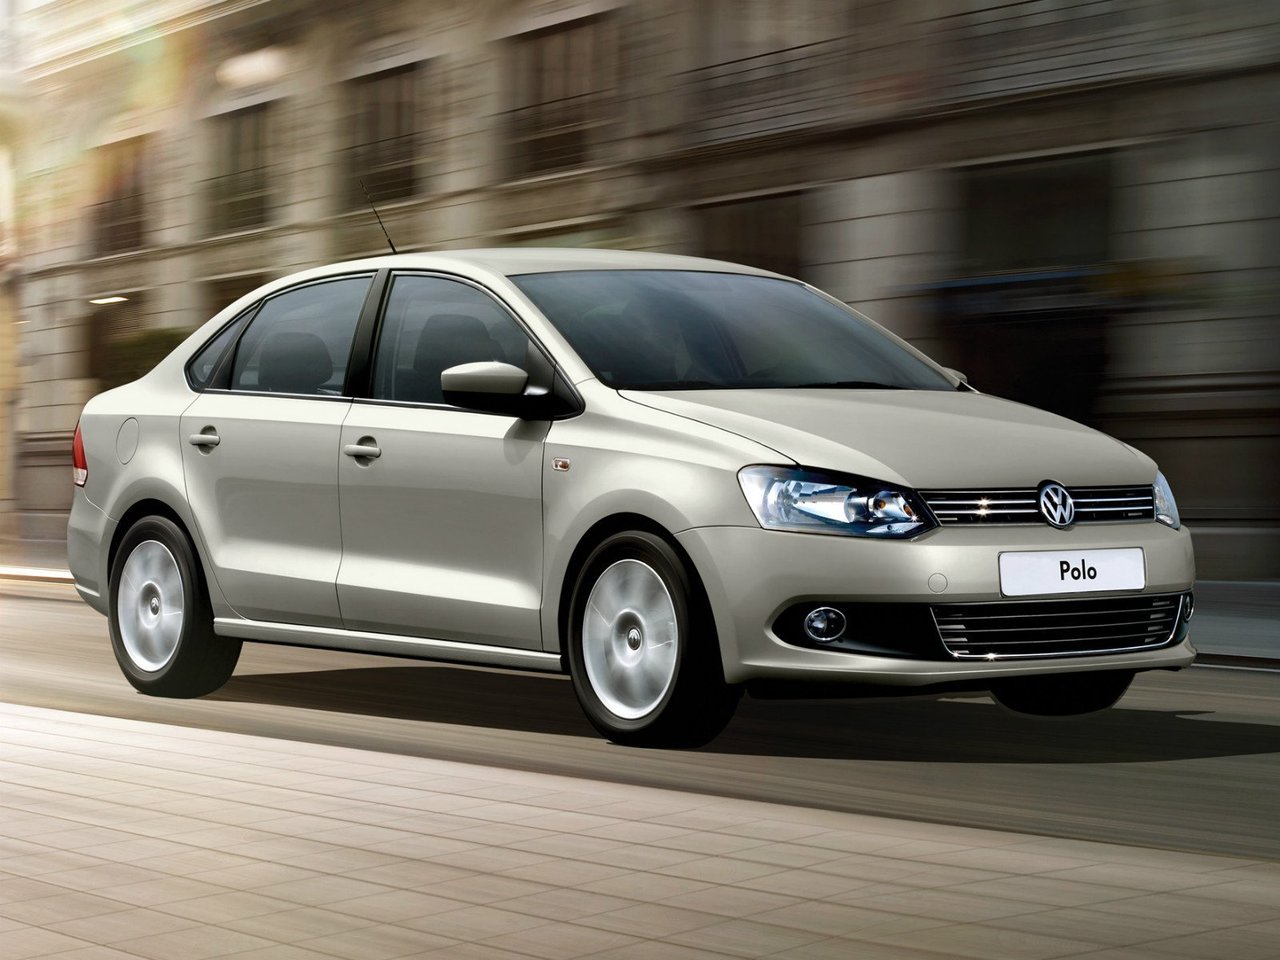 Снижаем расход Volkswagen Polo на топливо, устанавливаем ГБО